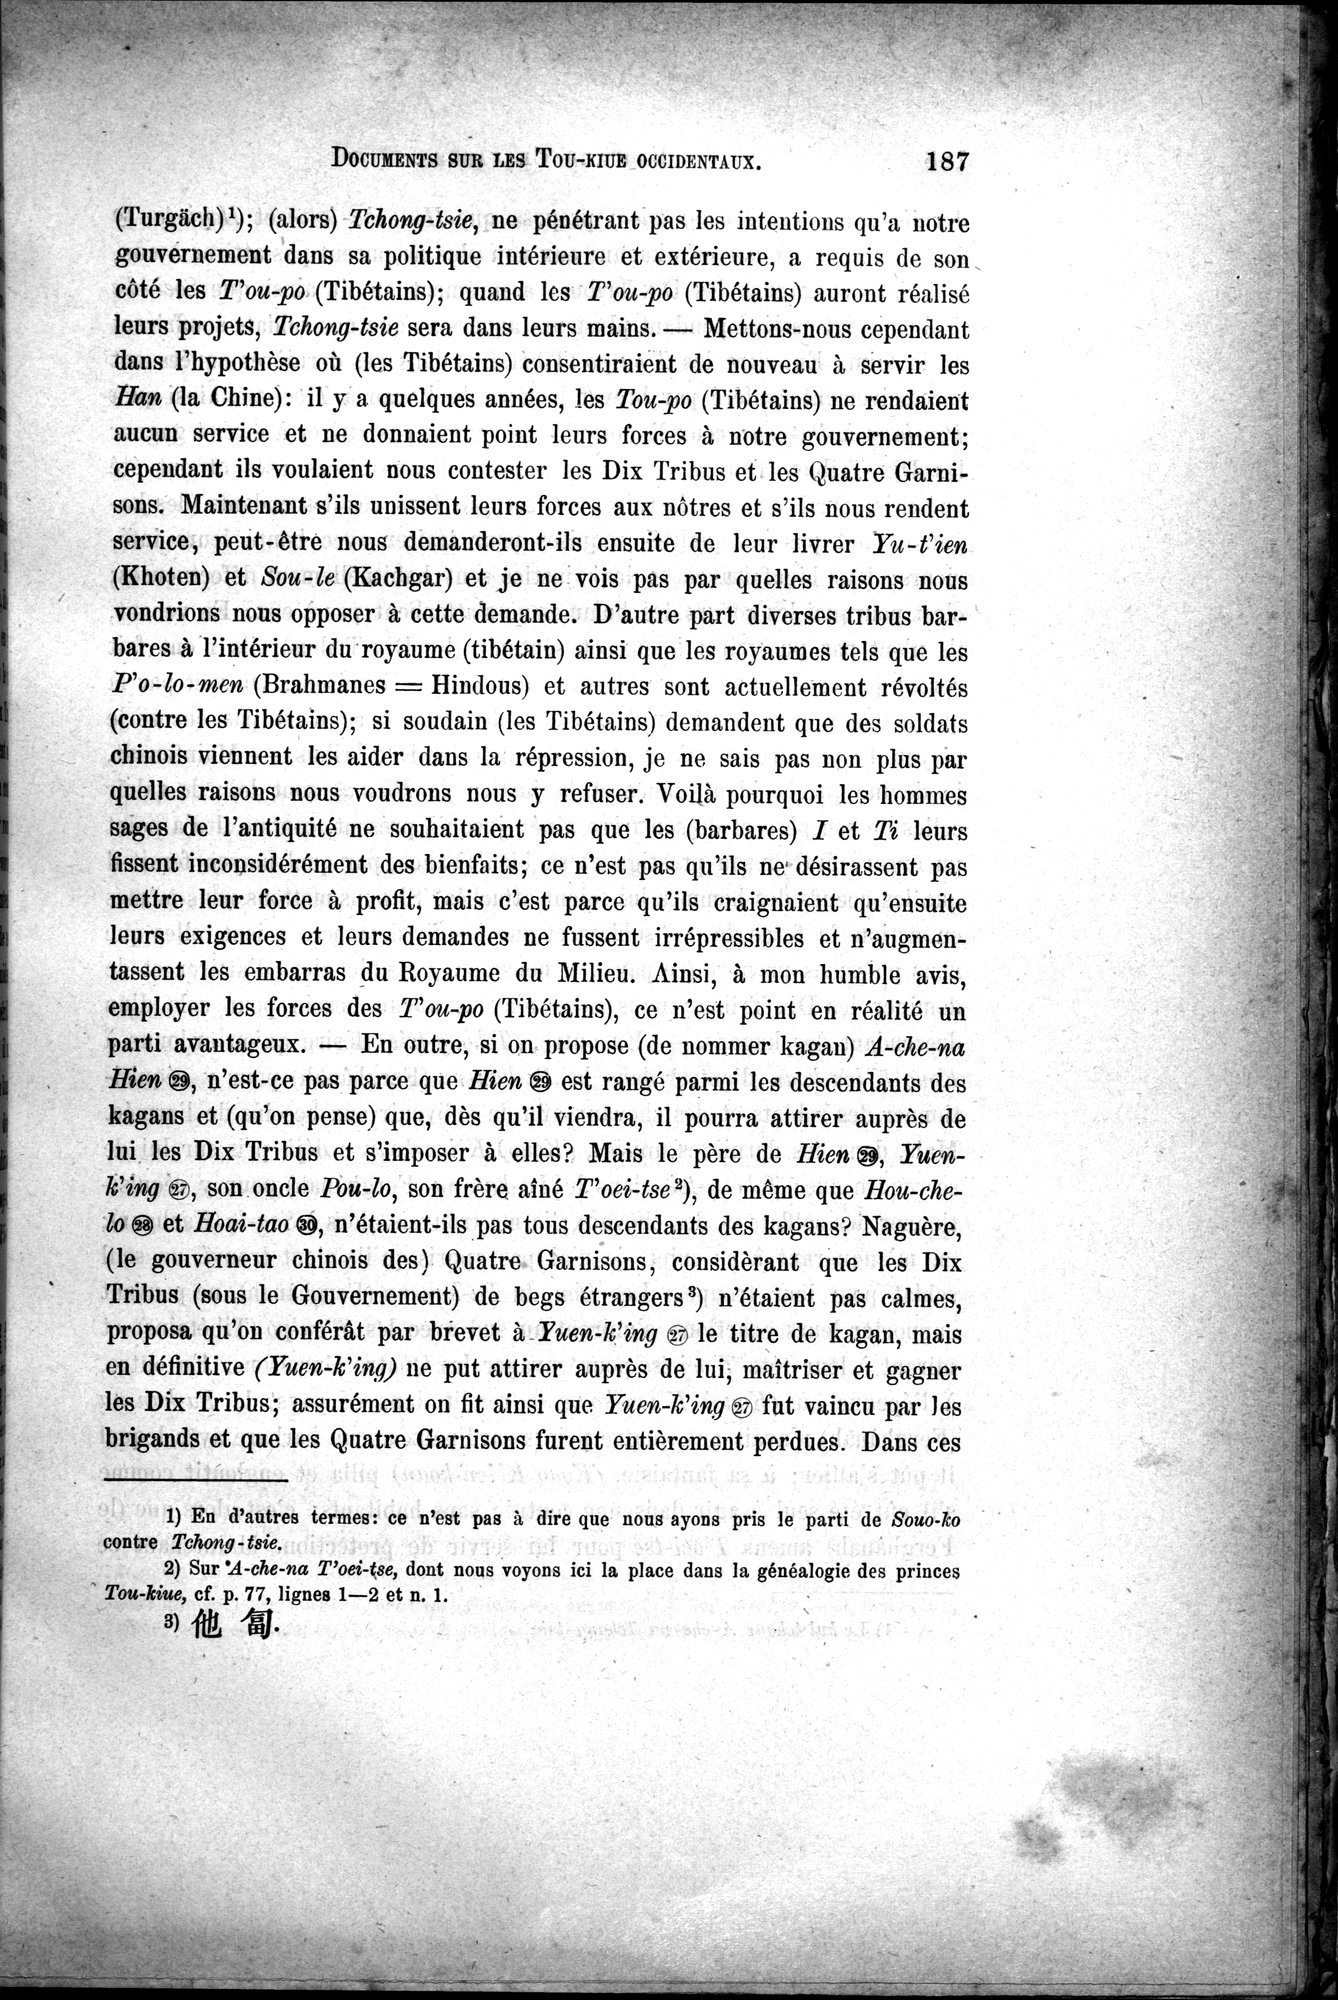 Documents sur les Tou-kiue (Turcs) occidentaux : vol.1 / Page 197 (Grayscale High Resolution Image)